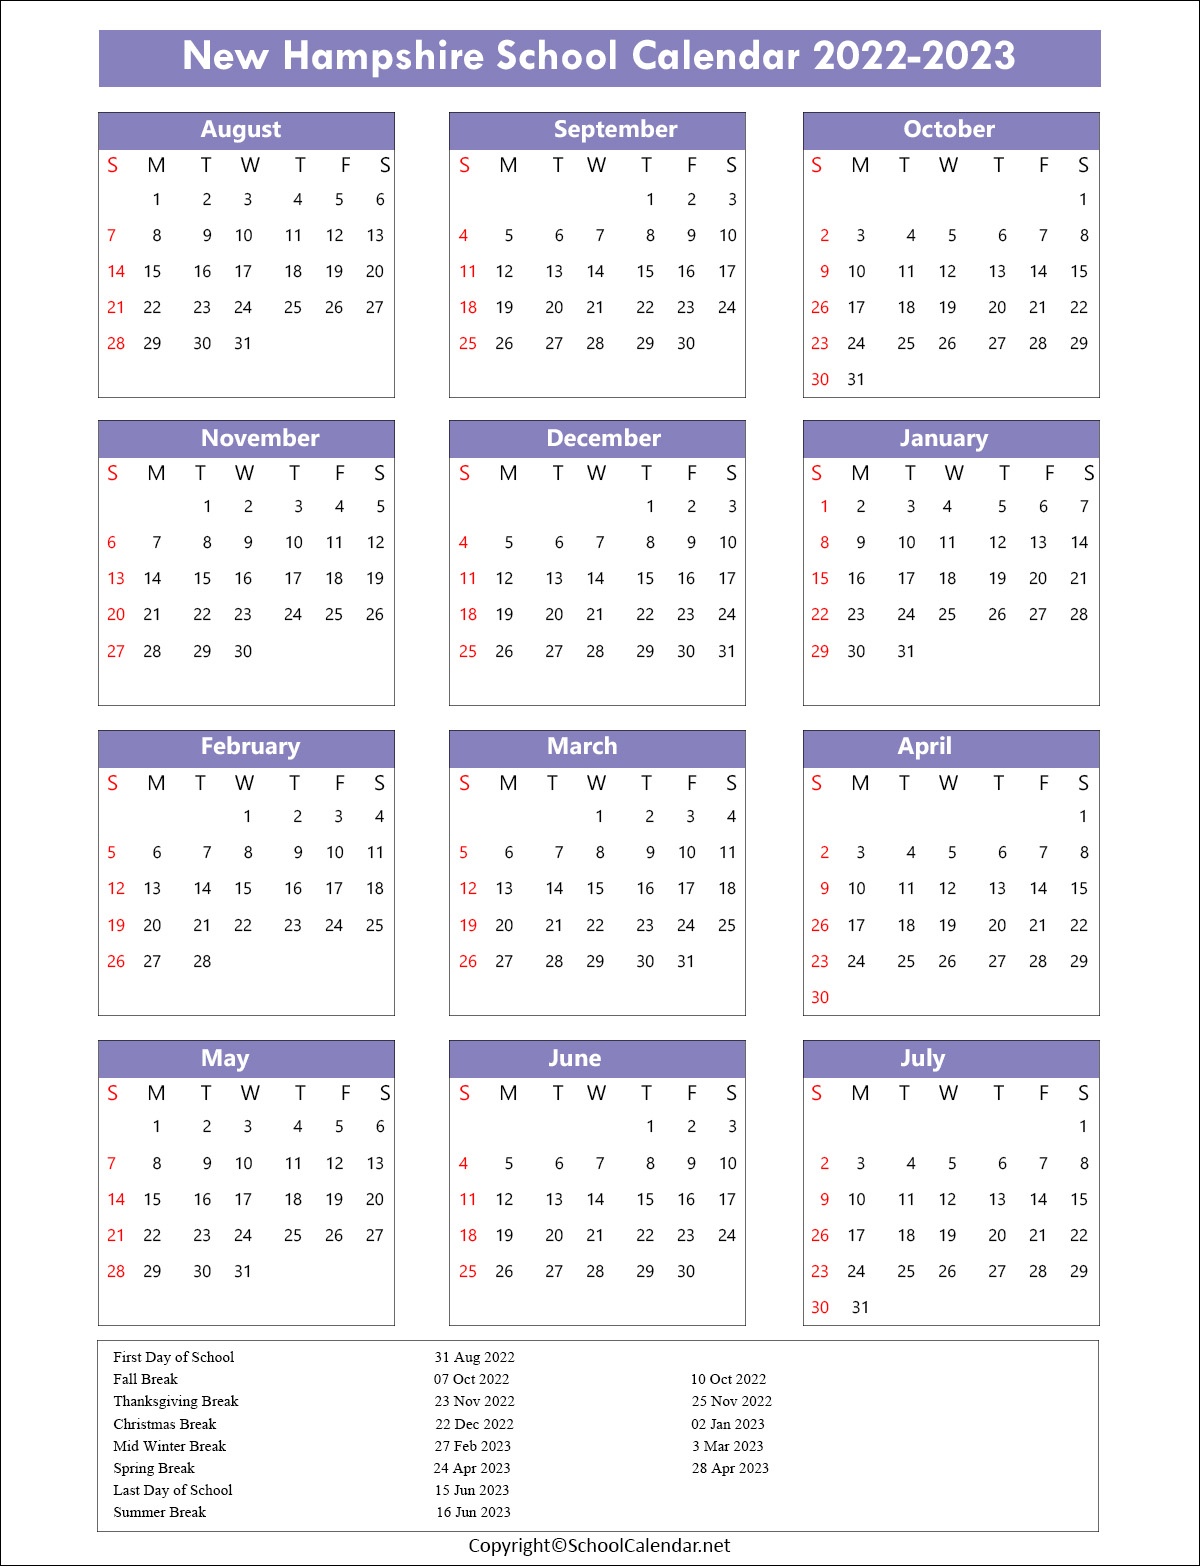 New-Hampshire School Calendar 2022